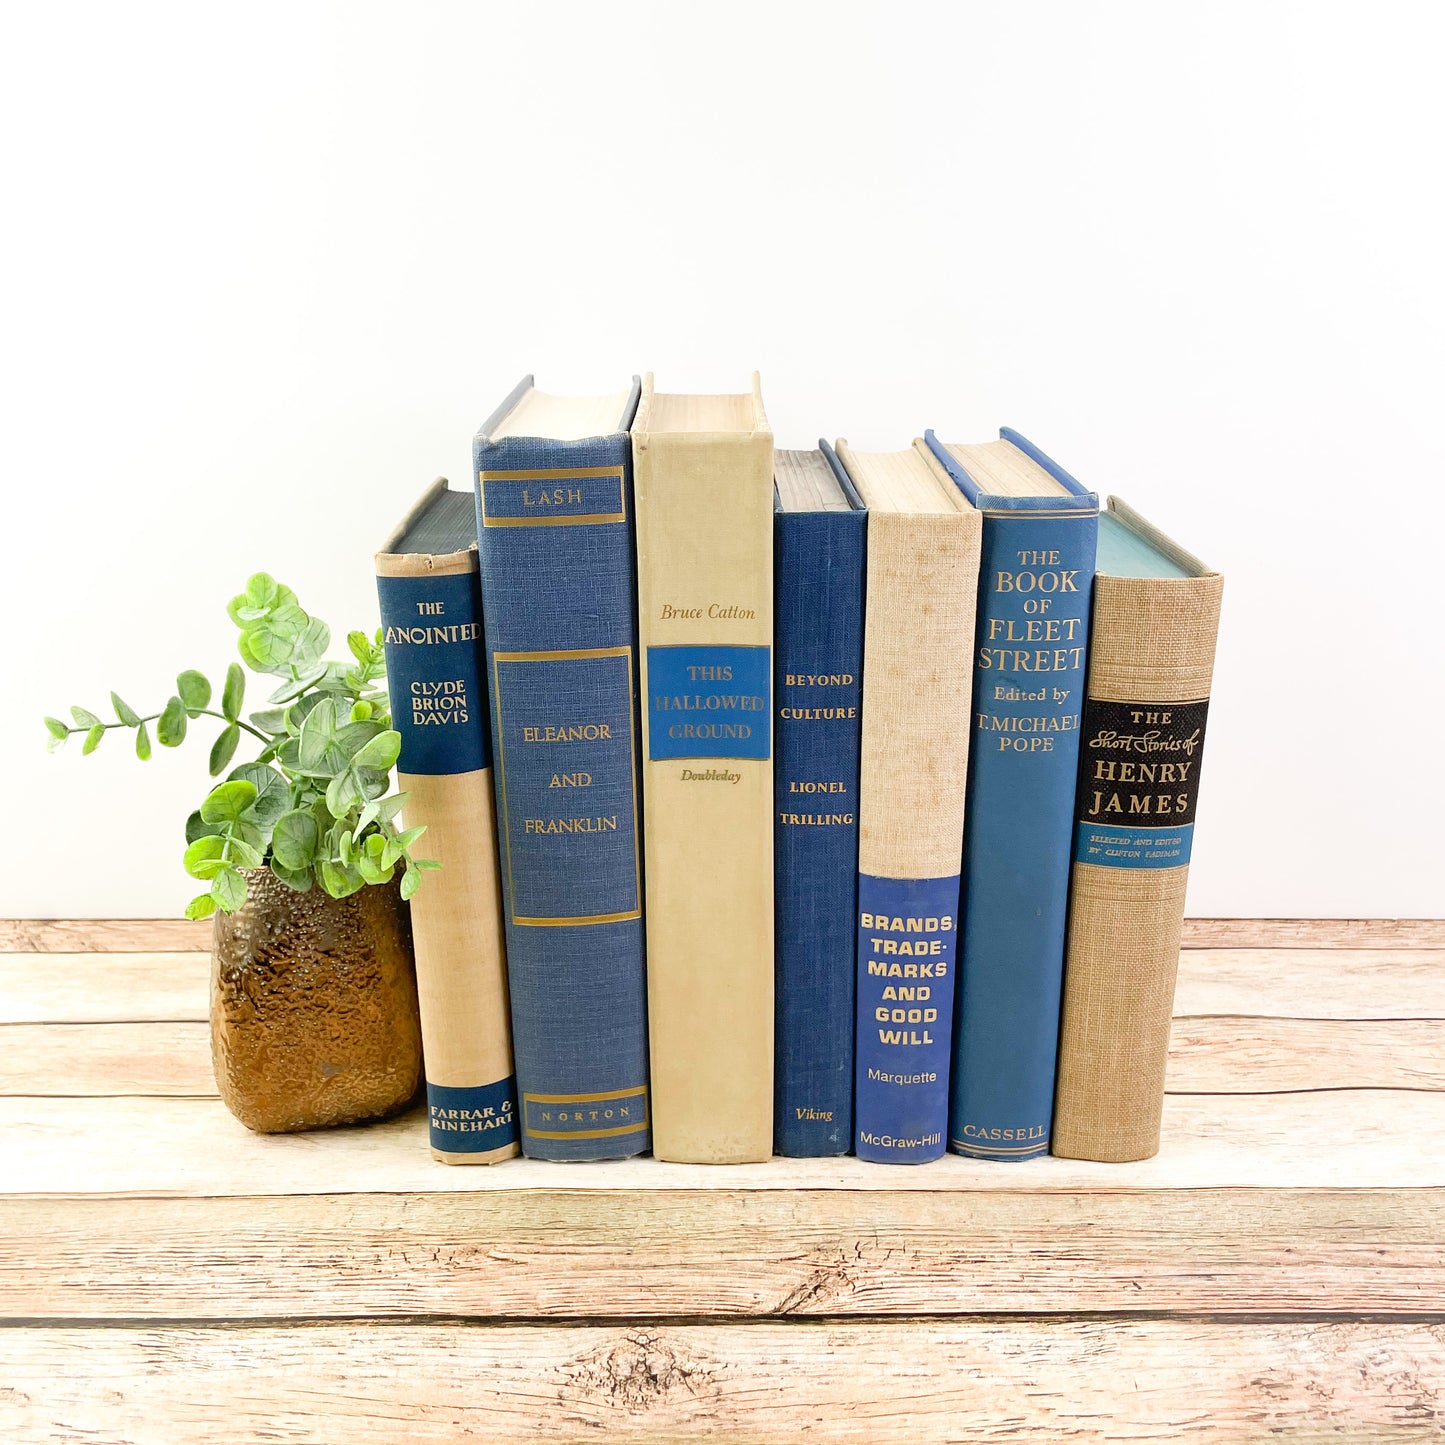 Blue and Cream Decorative Book Set for Home Decor